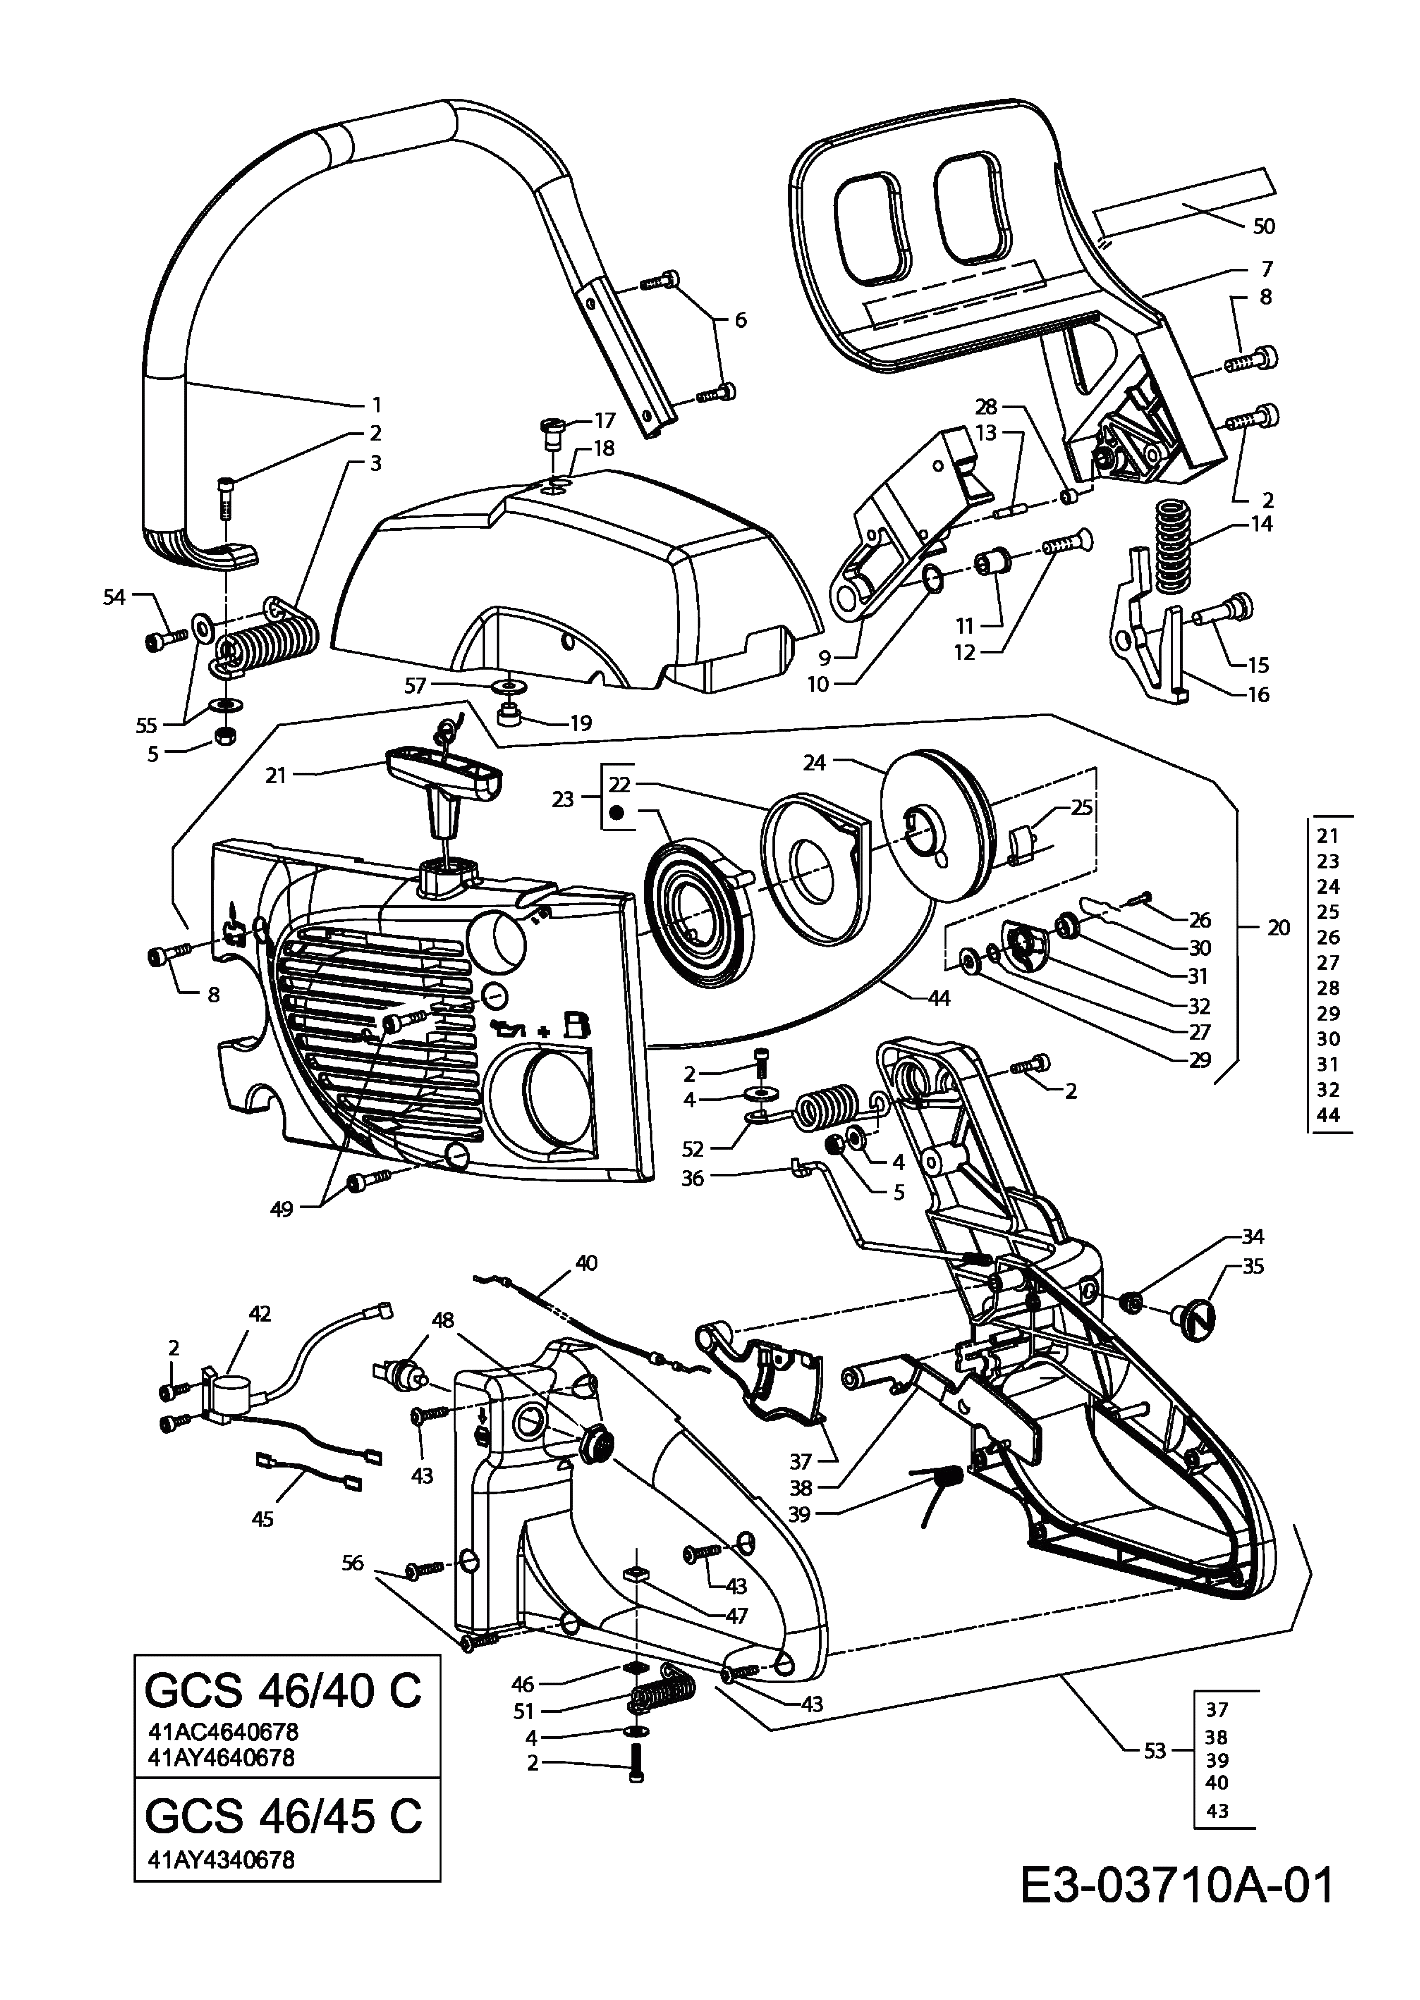 MTD Артикул 41AC4640678 (год выпуска 2008). Handle grip, двигатель Крышкаs